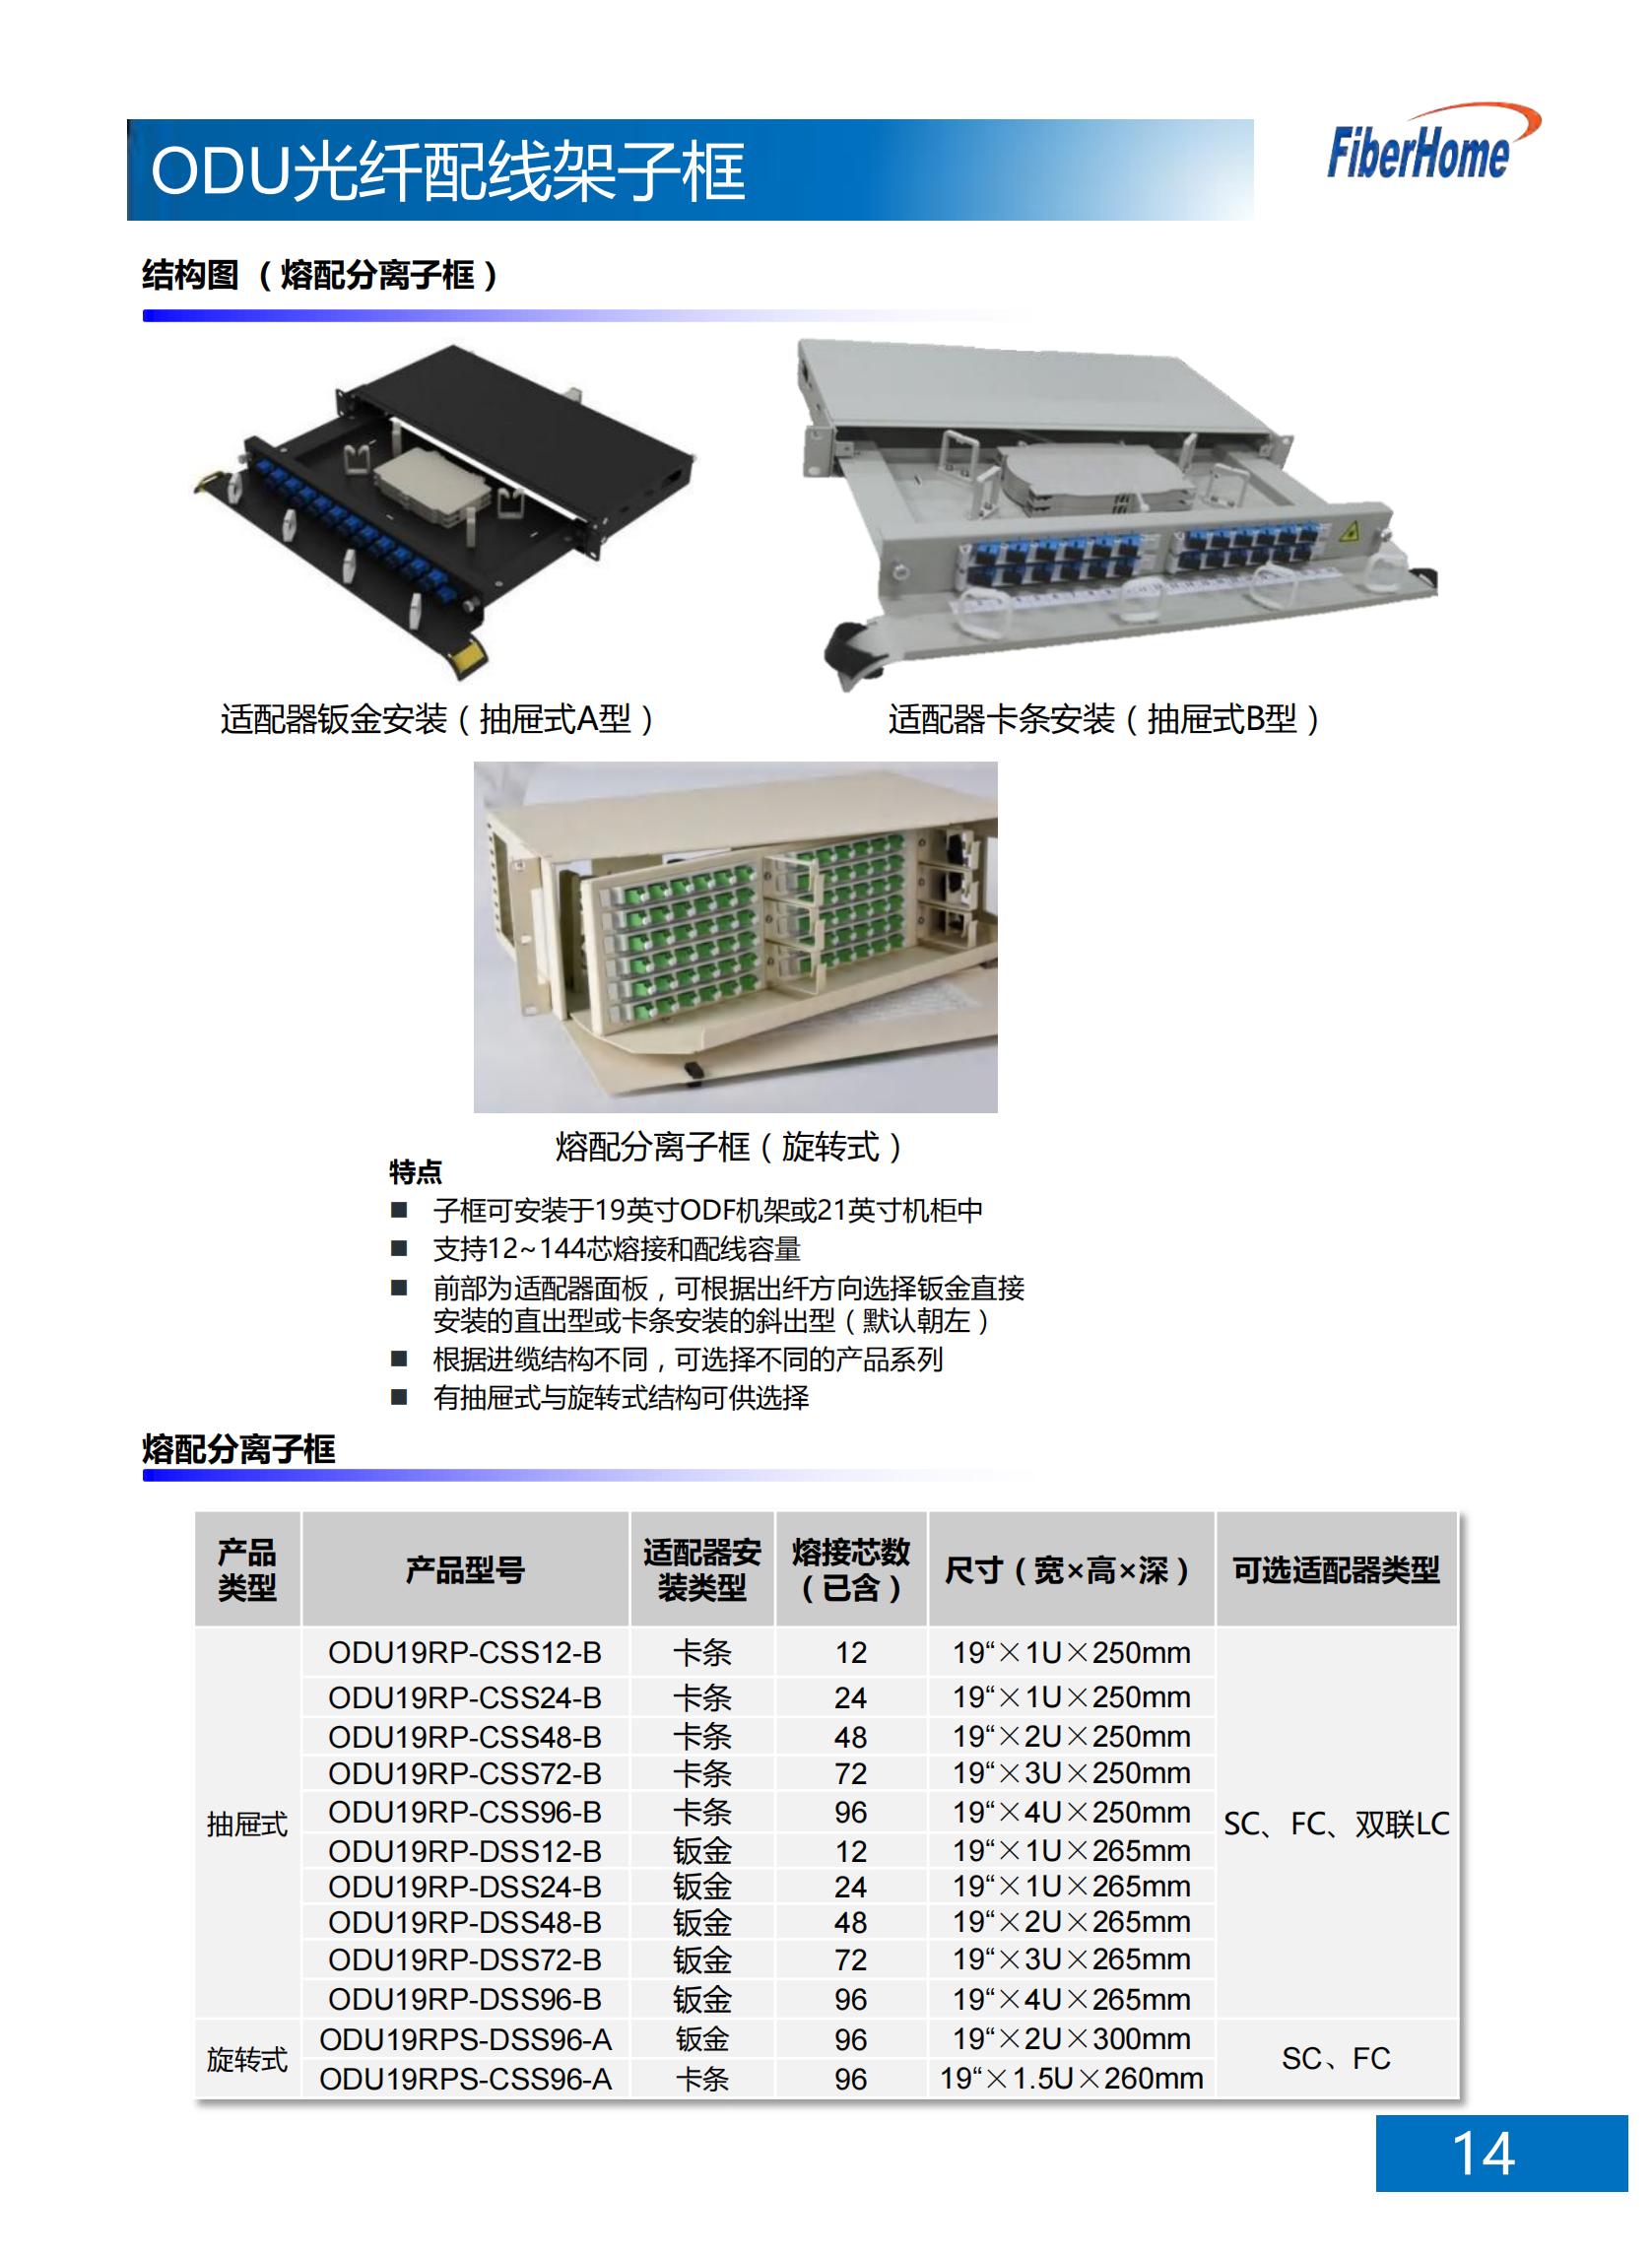 12芯 ODU光纤配线架子框 ODU19T-A12-B-SC （含12芯SC熔配一体化单元*1）